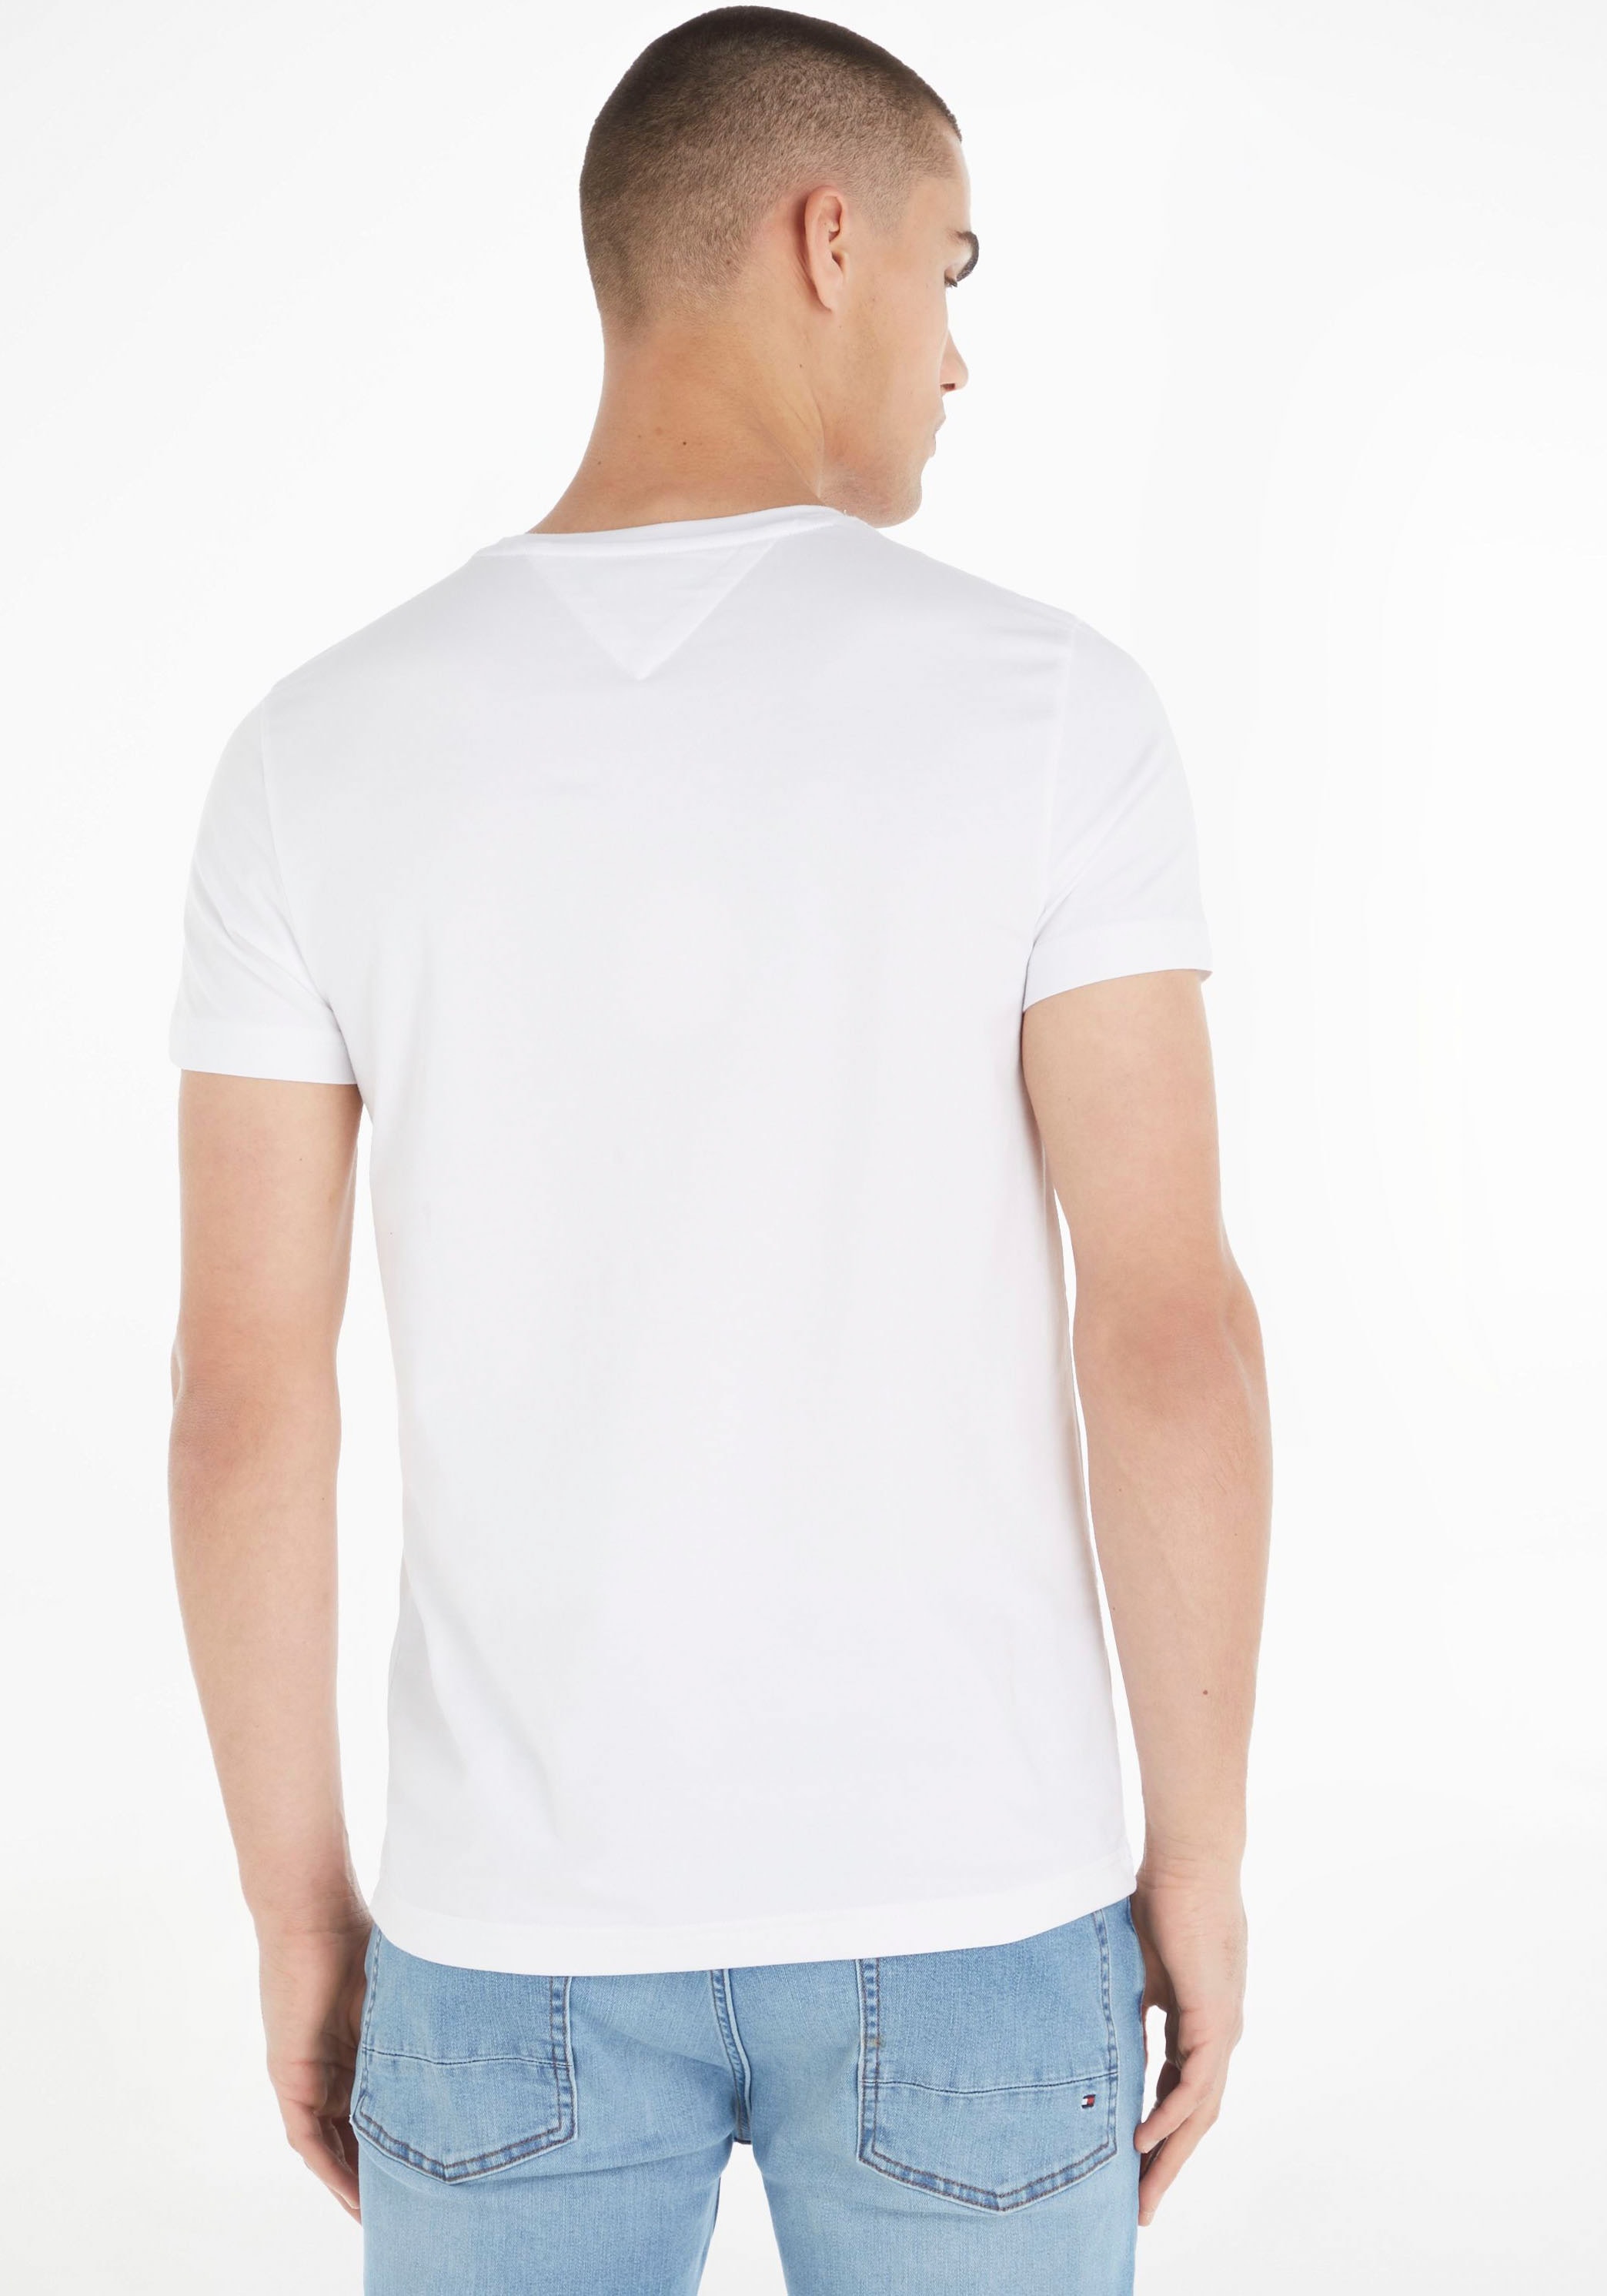 ➤ Shirts kaufen - versandkostenfrei ohne Mindestbestellwert